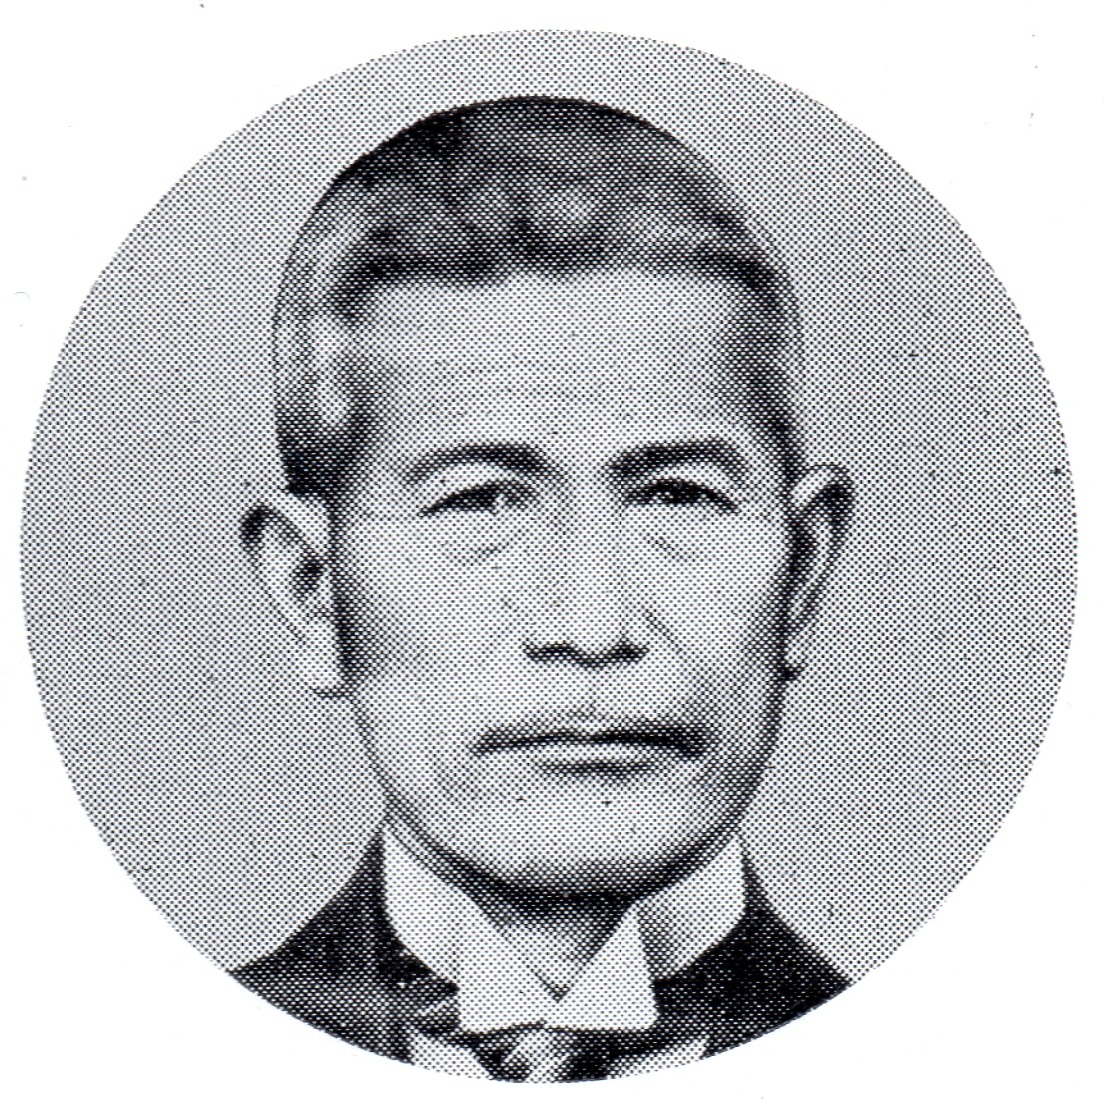 Masujiro Hashimoto